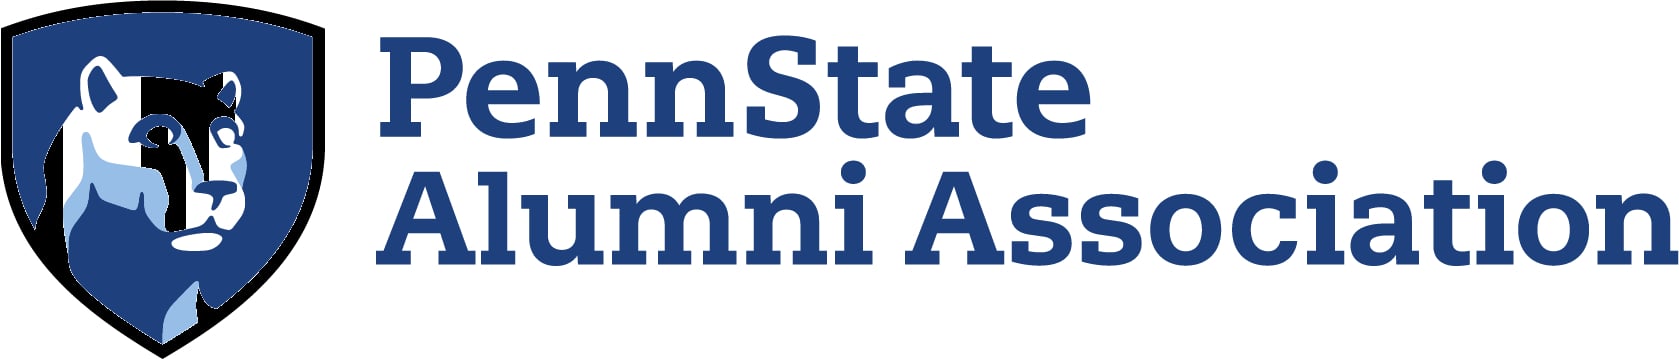 Penn State Alumni Association print logo